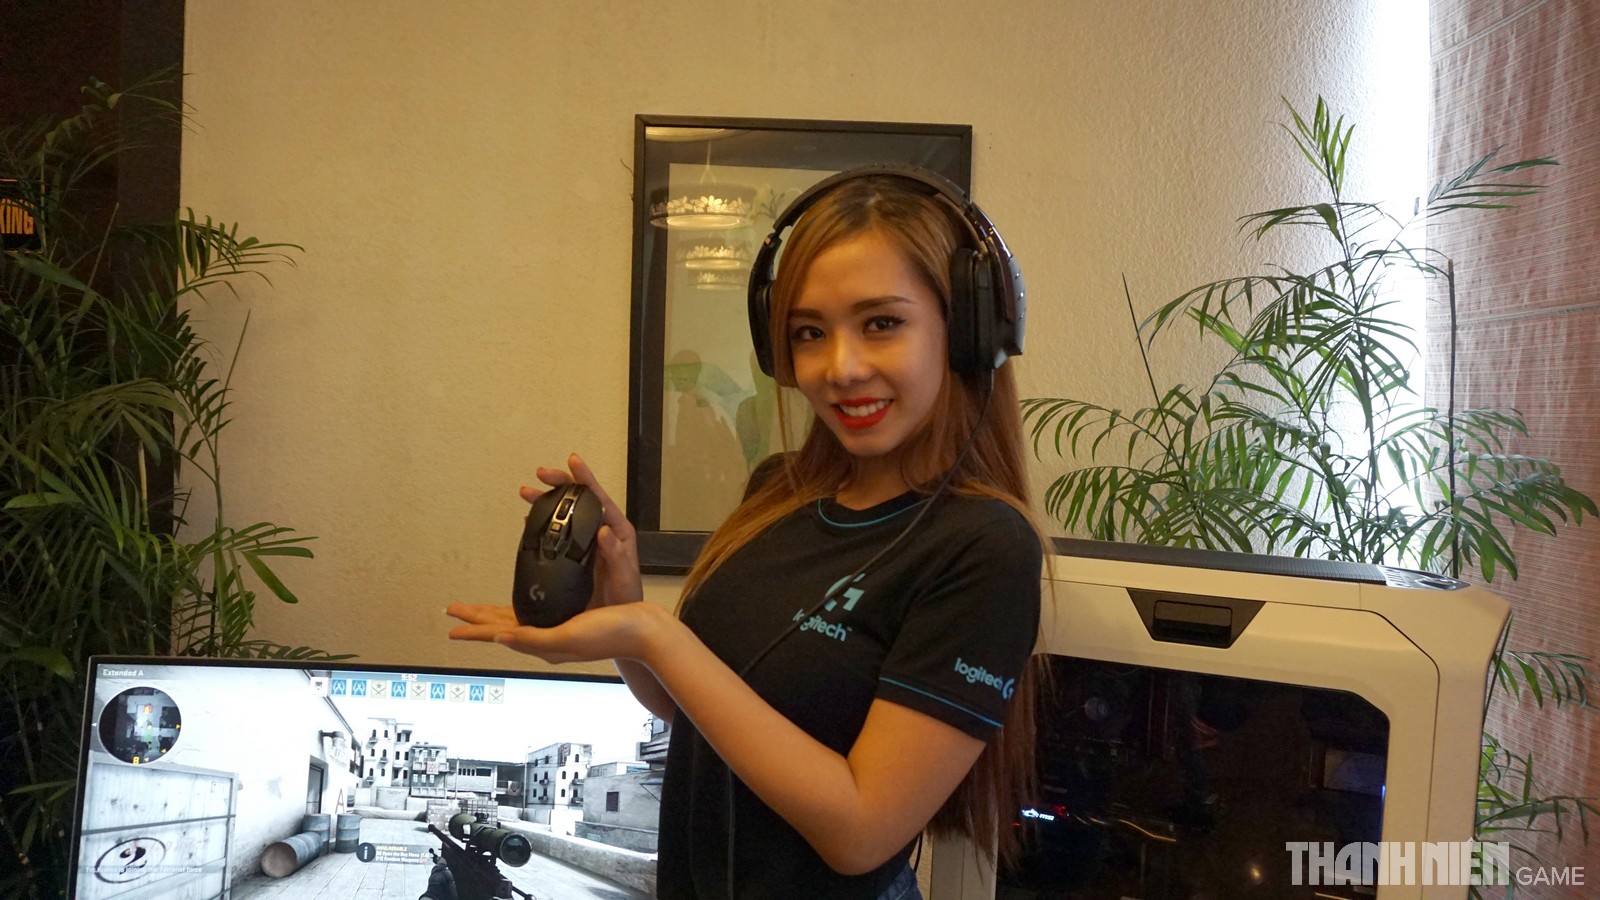 Logitech chính thức ra mắt bàn phím chơi game G610, G810 và siêu phẩm chuột G900 tại Việt Nam